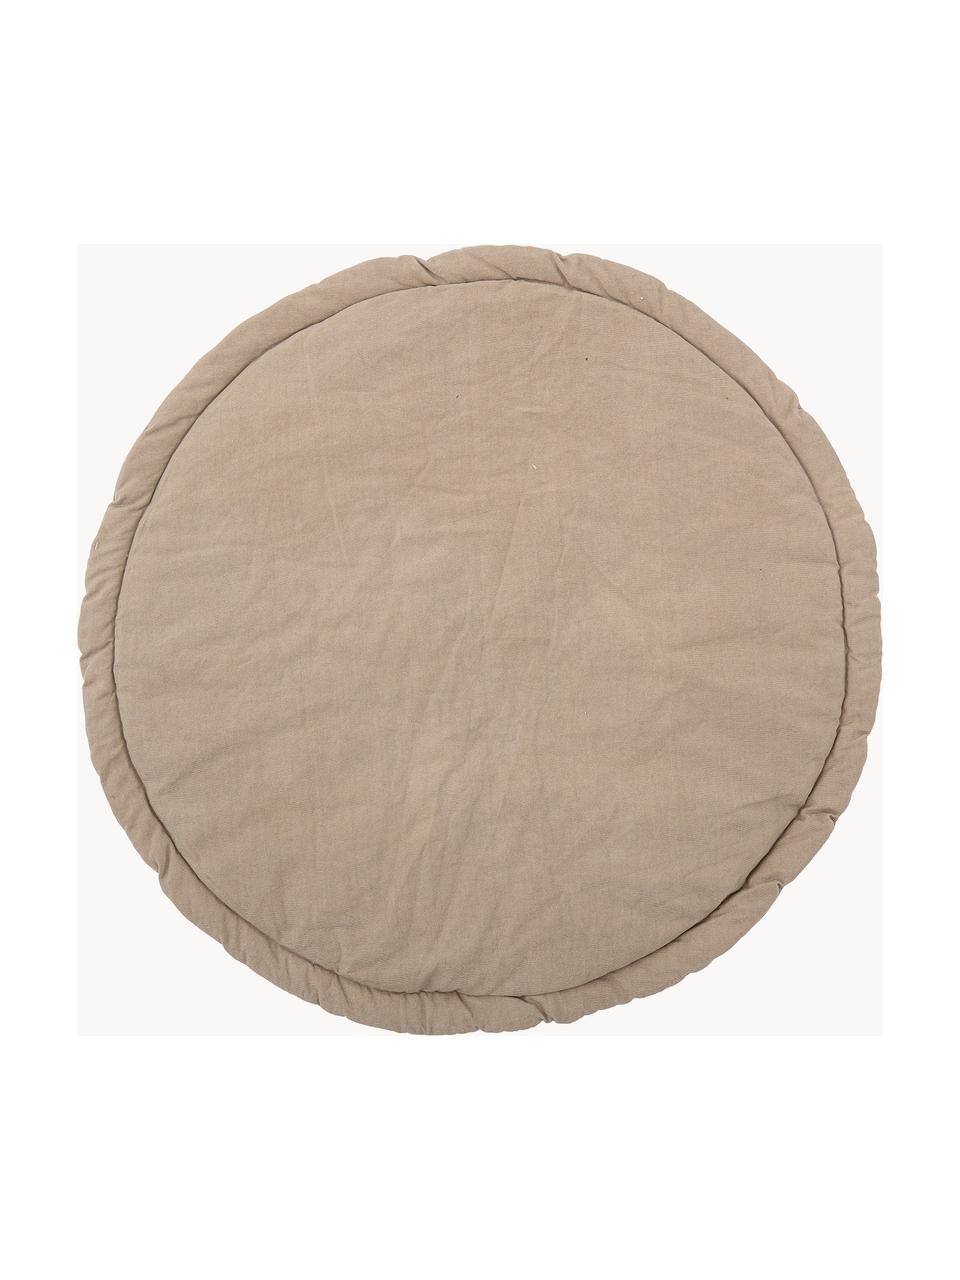 Mata z bawełny Miko, Beżowy, wielobarwny, Ø 100 cm